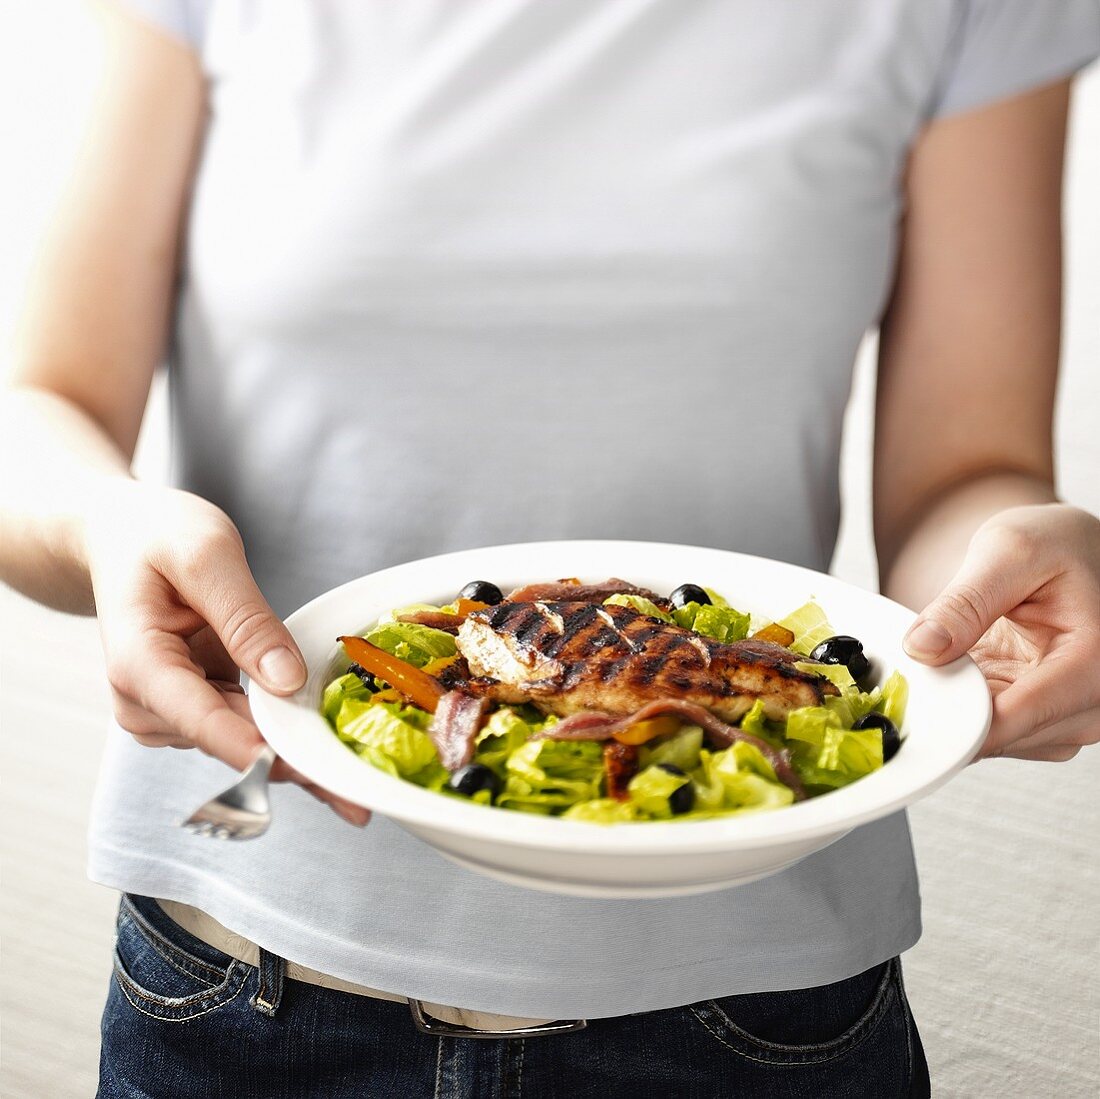 Frau hält einen Salat mit gegrilltem Hühnchenfilet